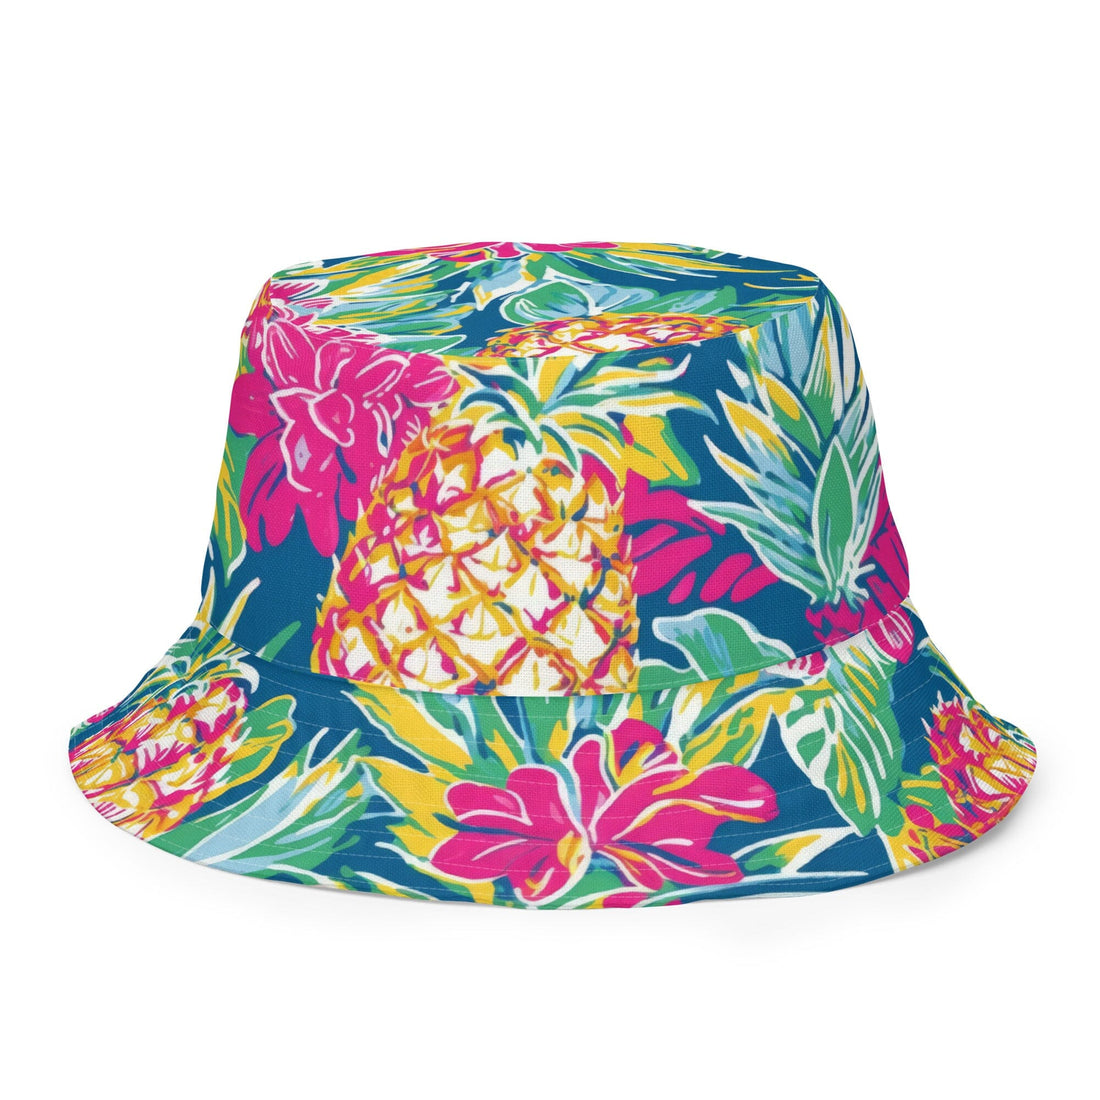 Ohana Bucket Hat-Hat-Beachwear-Swimwear-Coastal Cool